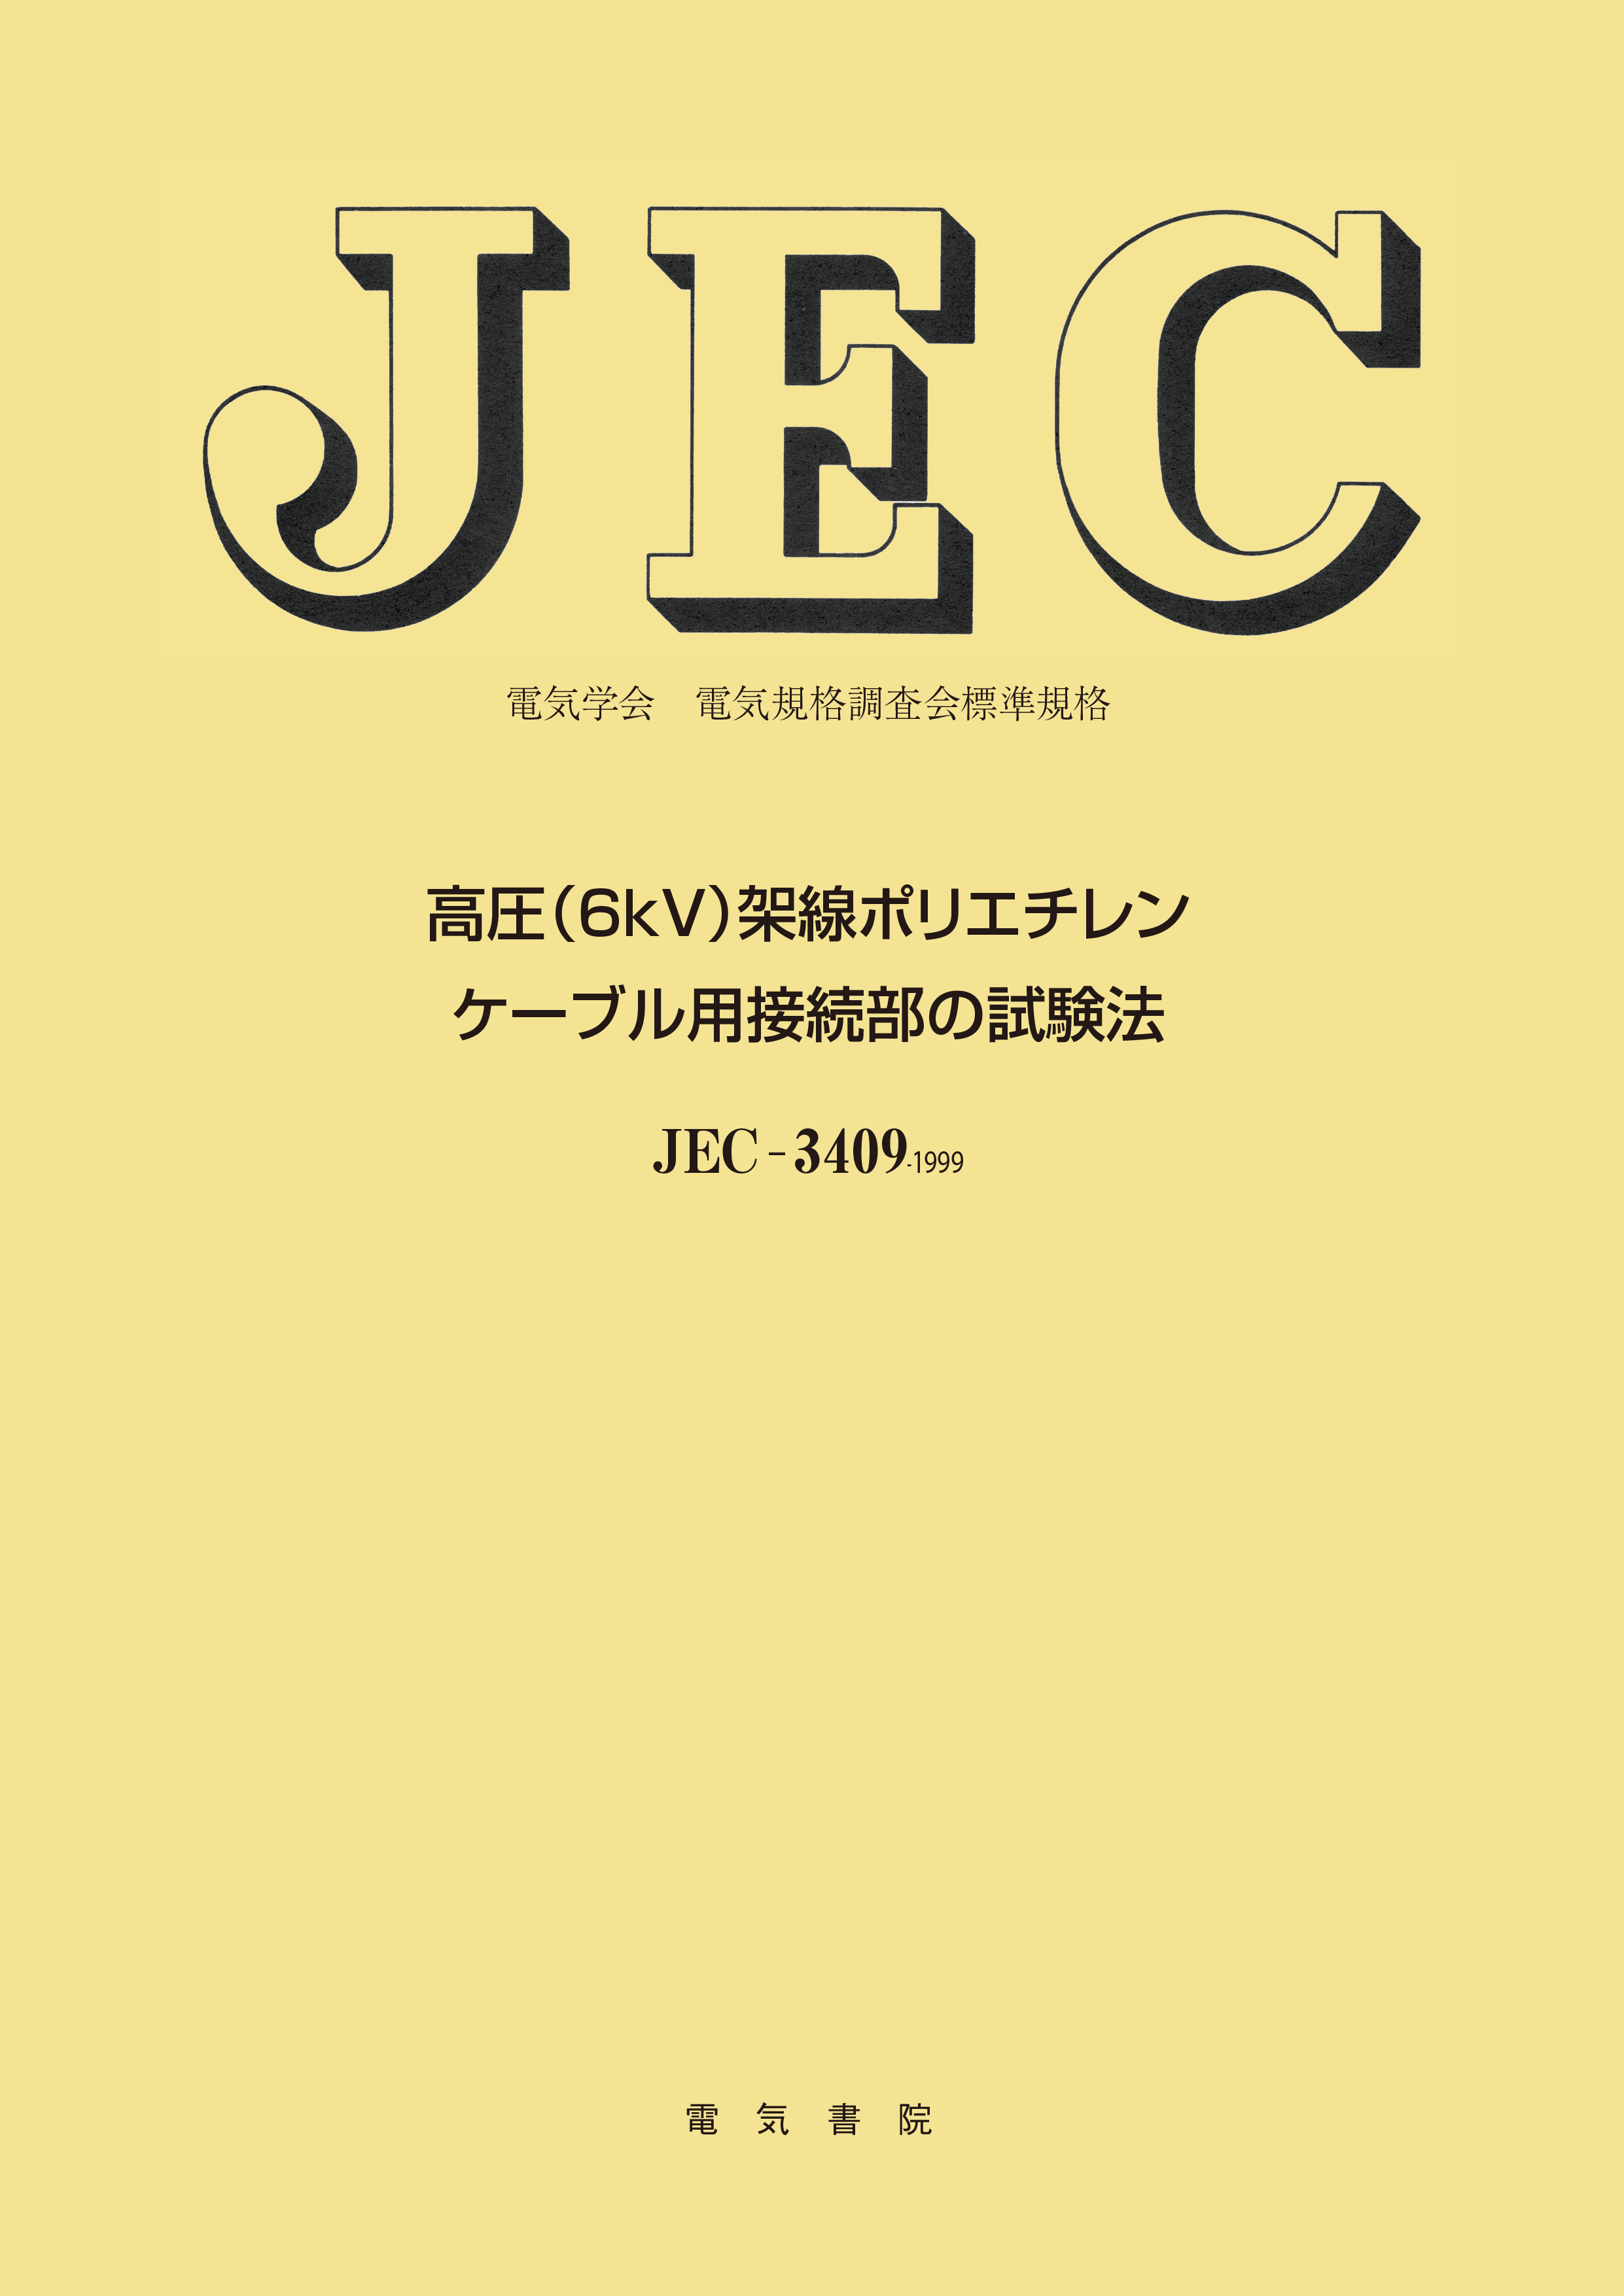 JEC-3409　高圧(6kV)架線ポリエチレンケーブル用接続部の試験法